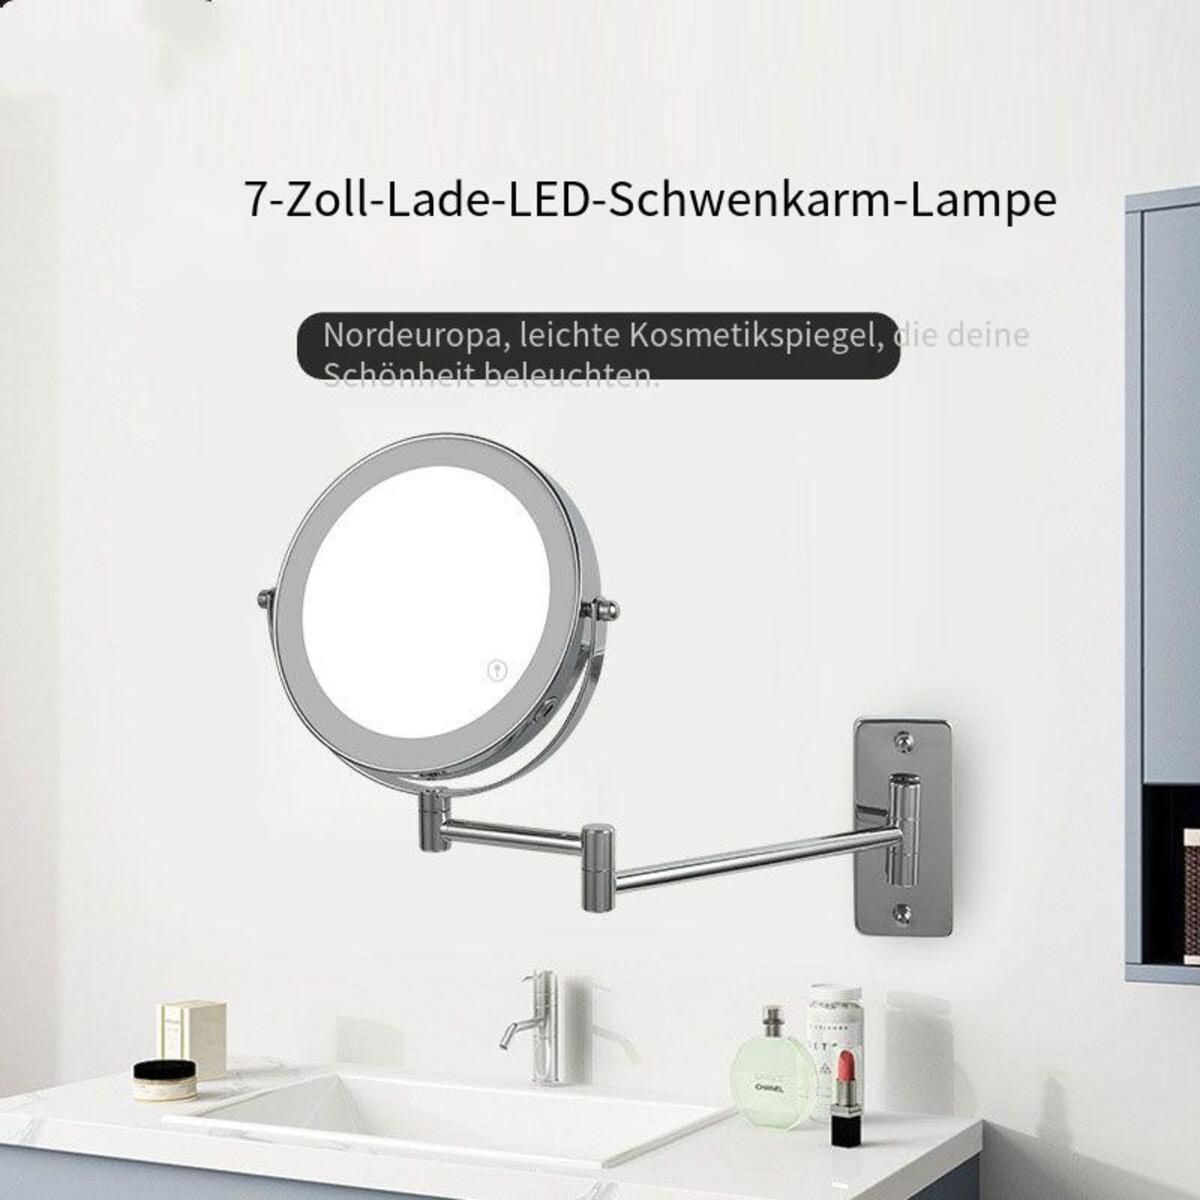 ELKUAIE Zusammenklappbar mit LED-Licht silver Kosmetikspiegel